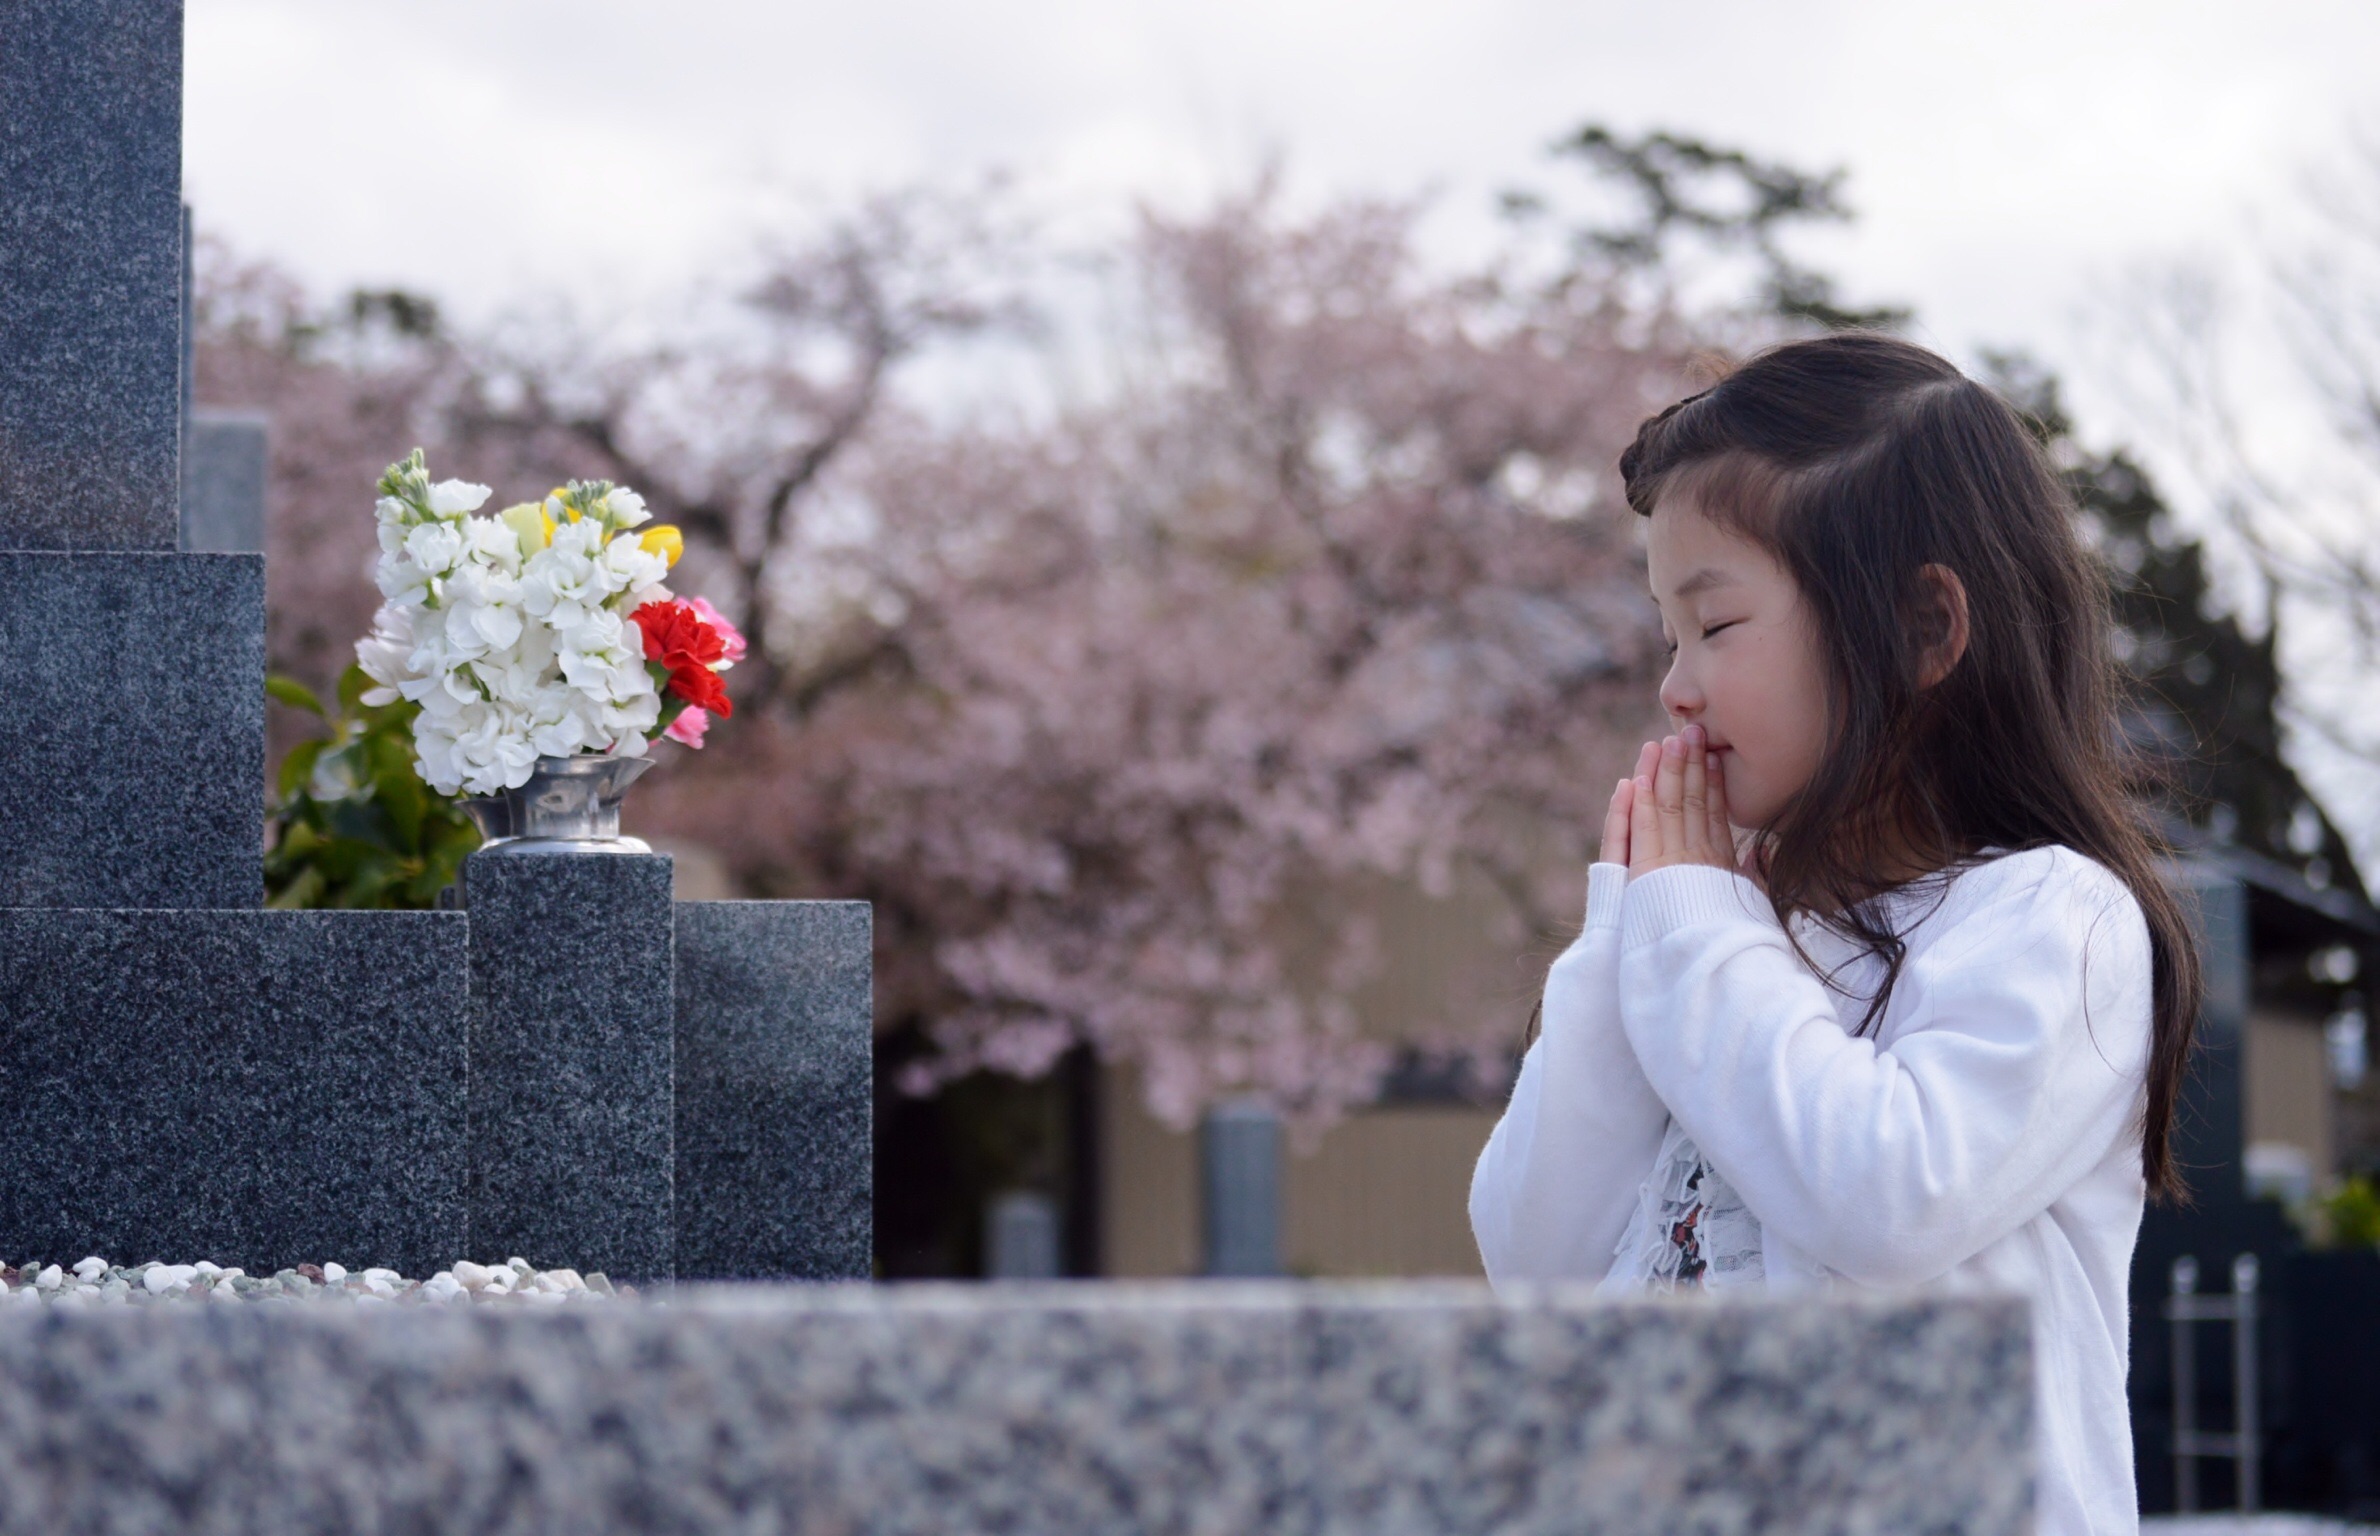 3 17 3 24は春のお彼岸 家族そろってお墓参りに出かけましょう ストーンメーソン真 滋賀県東近江市の石材店